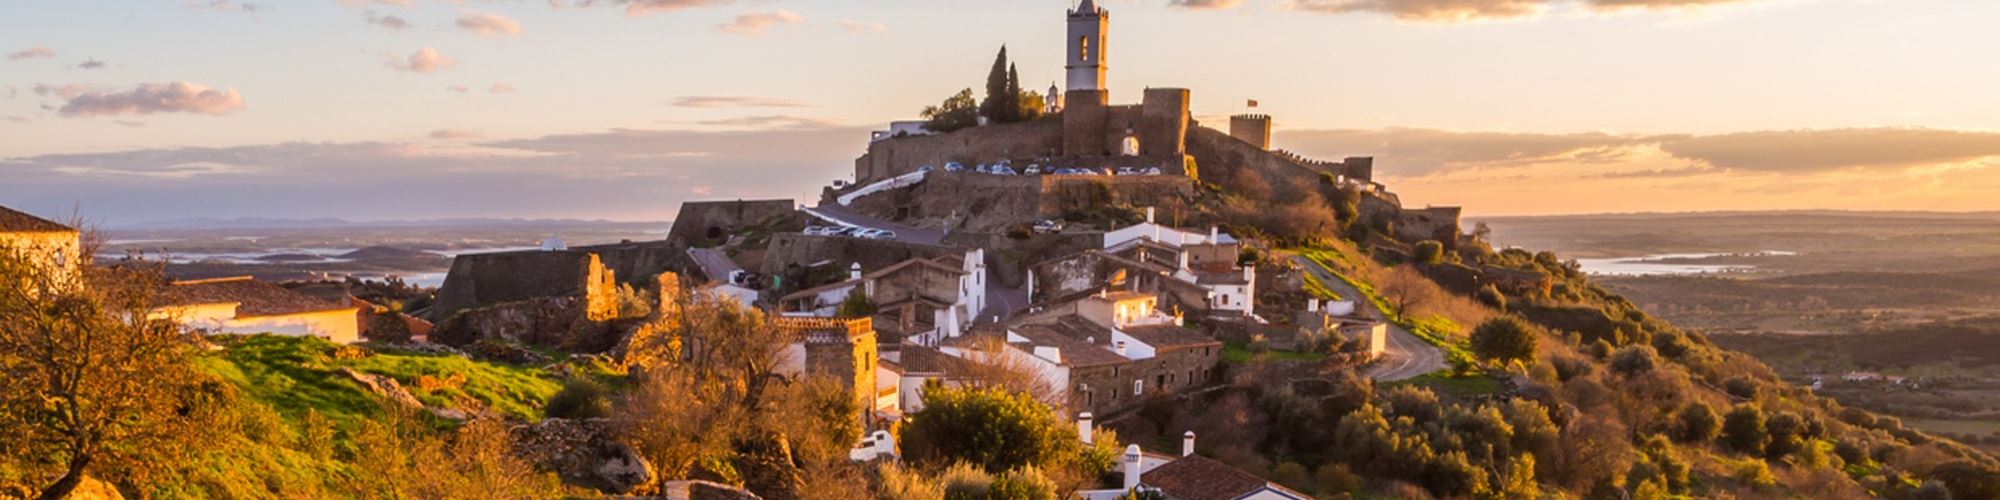 Estes são os 5 melhores lugares portugueses para aproveitares o outono